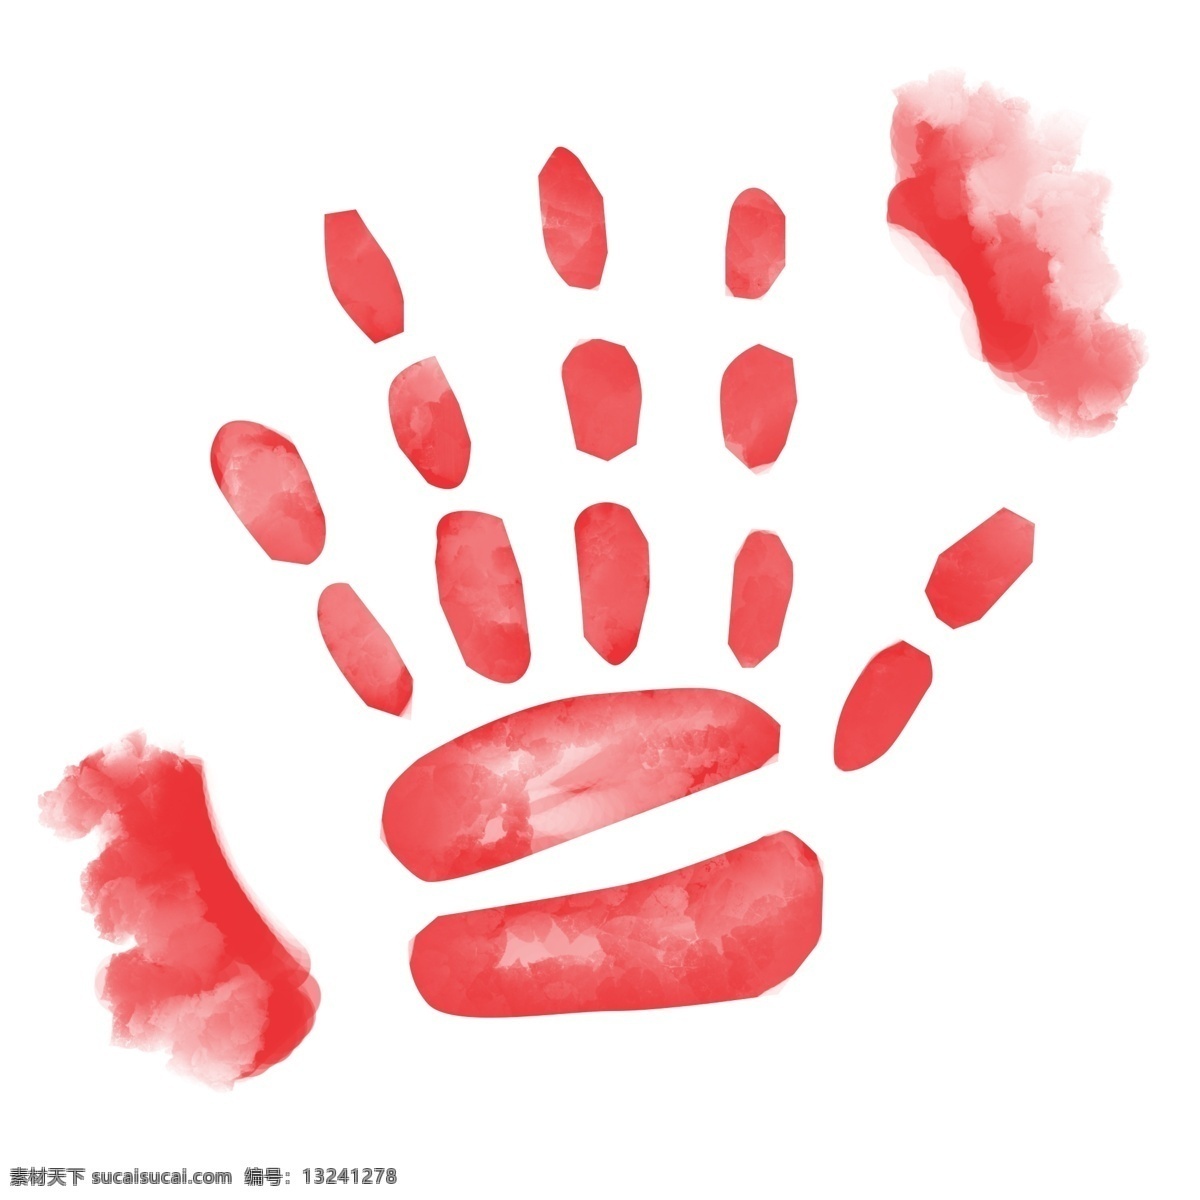 手掌 红 手印 印记 插画 红色手打印 红手印 红手印印记 手 油漆 创意印记 手掌印记 五只手印记